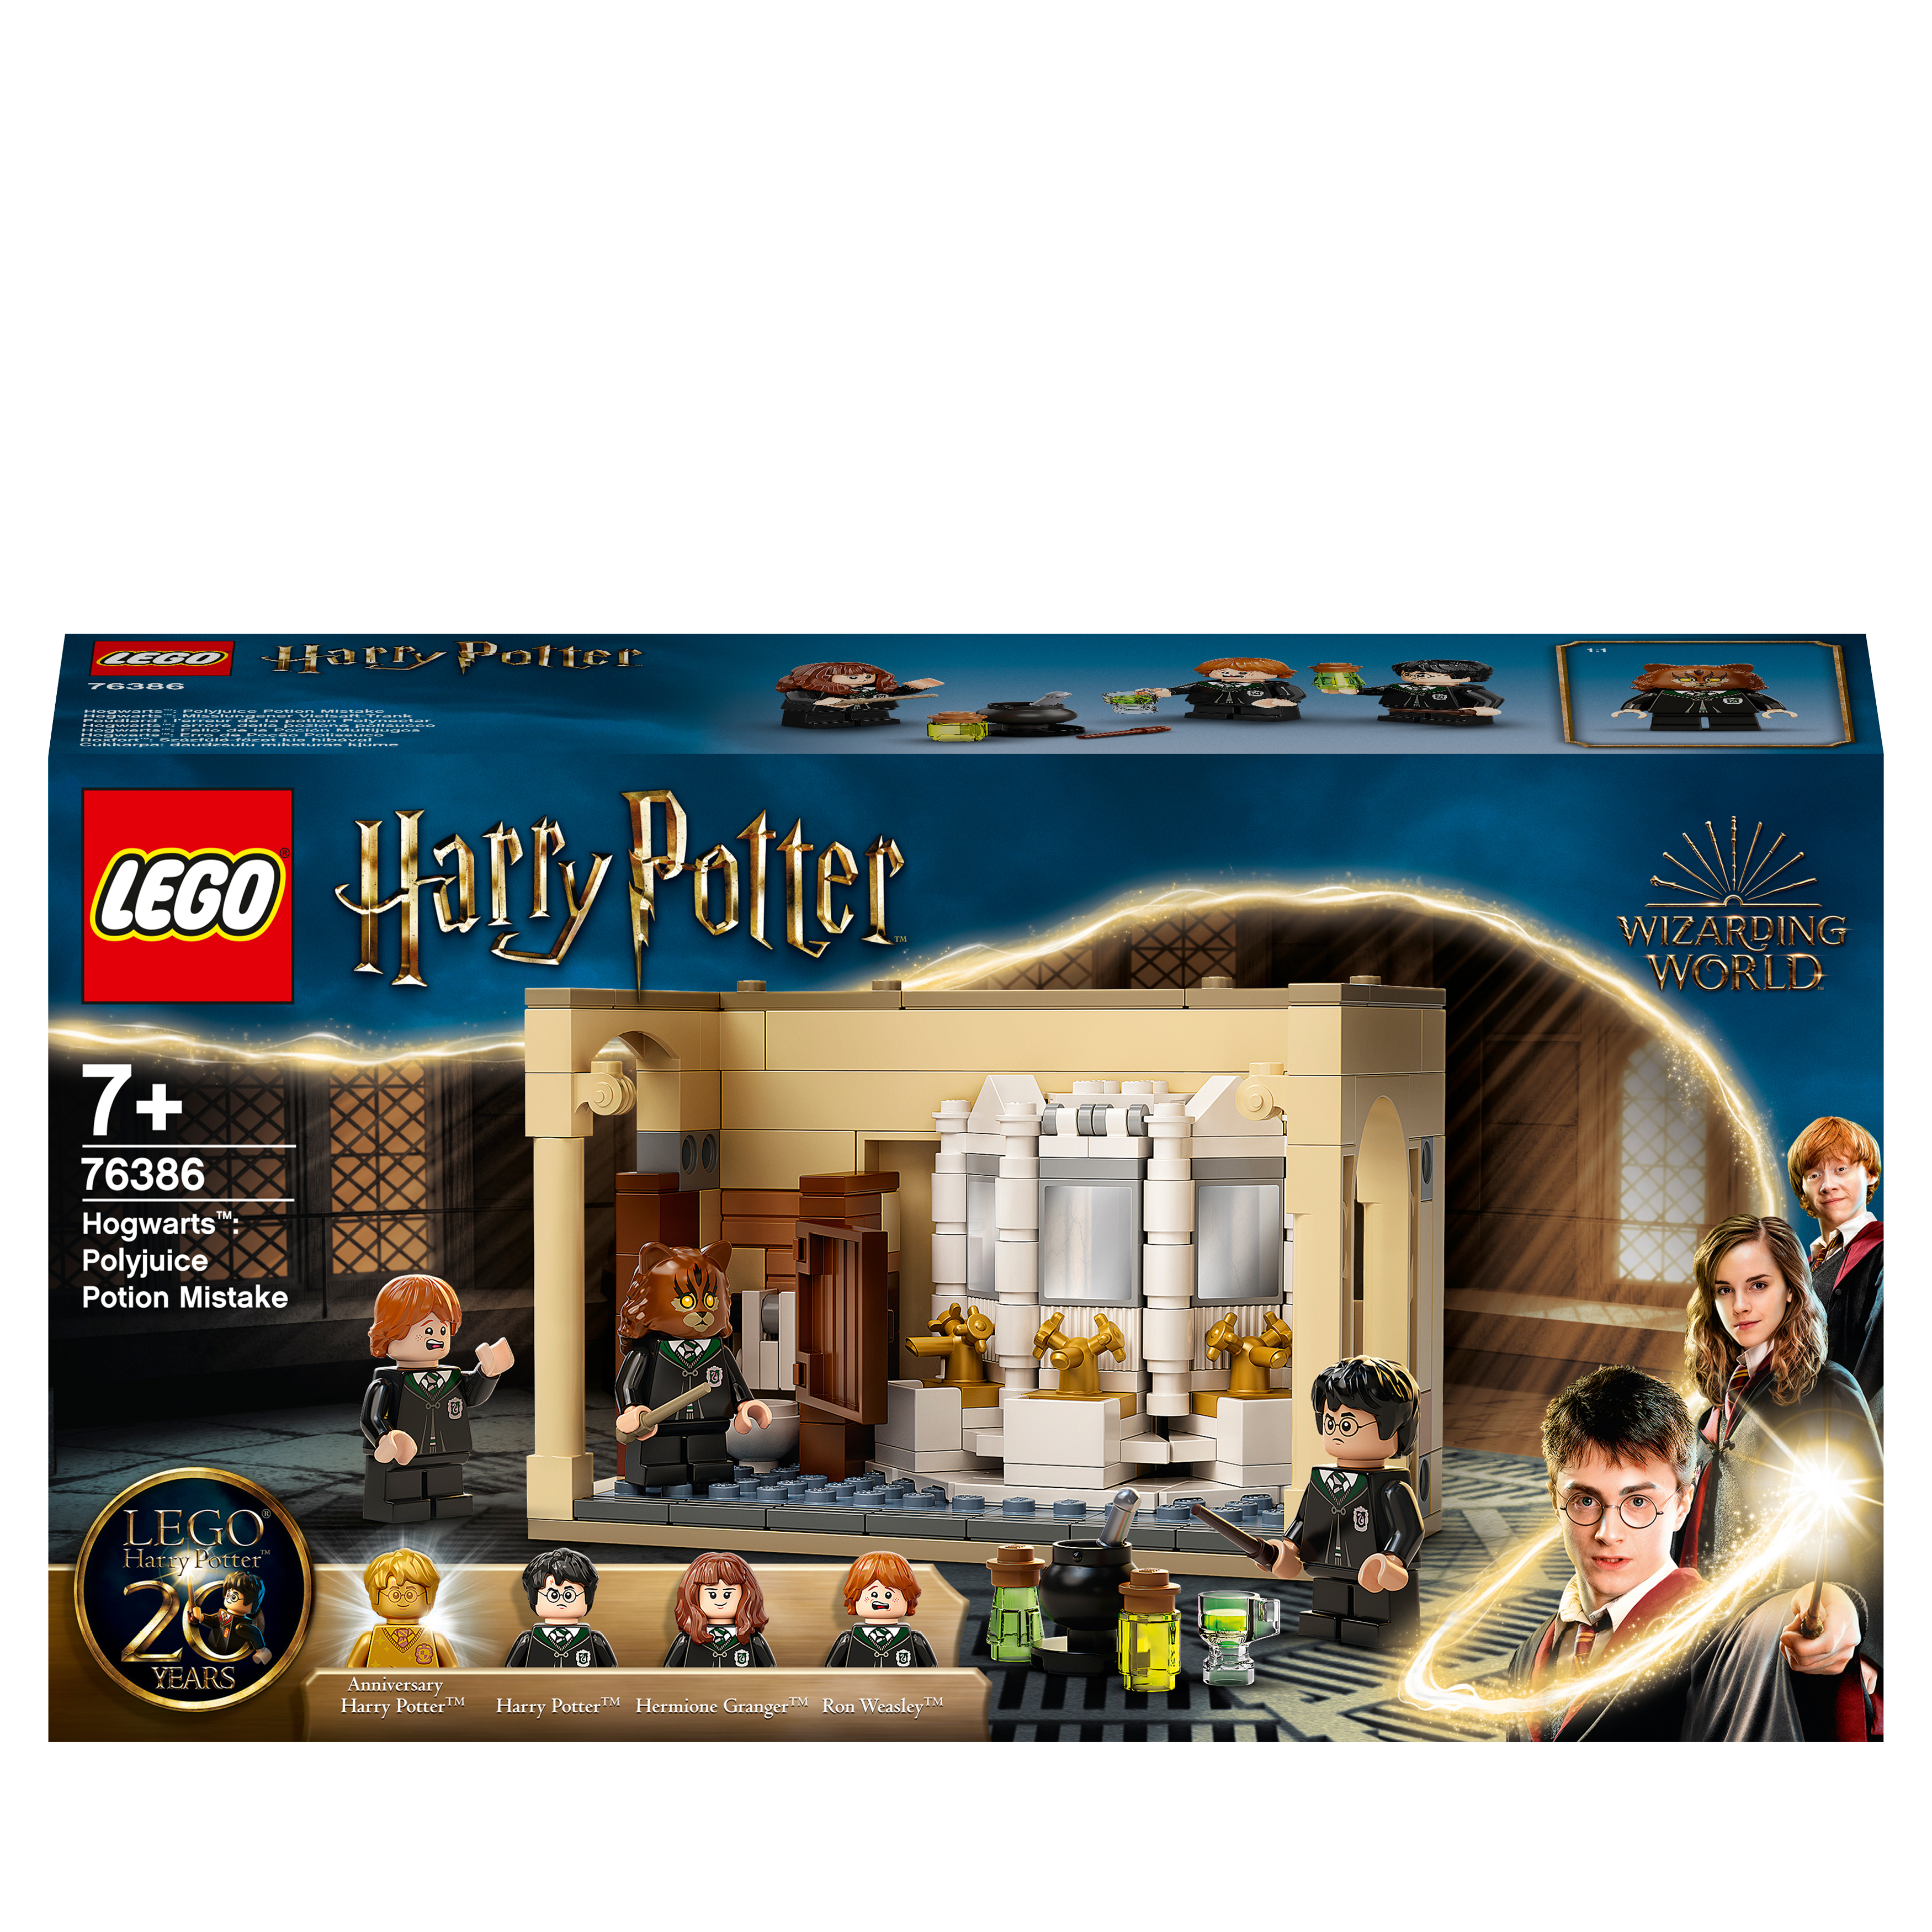 LEGO Harry Potter Hogwarts: Misslungener Vielsaft-Trank